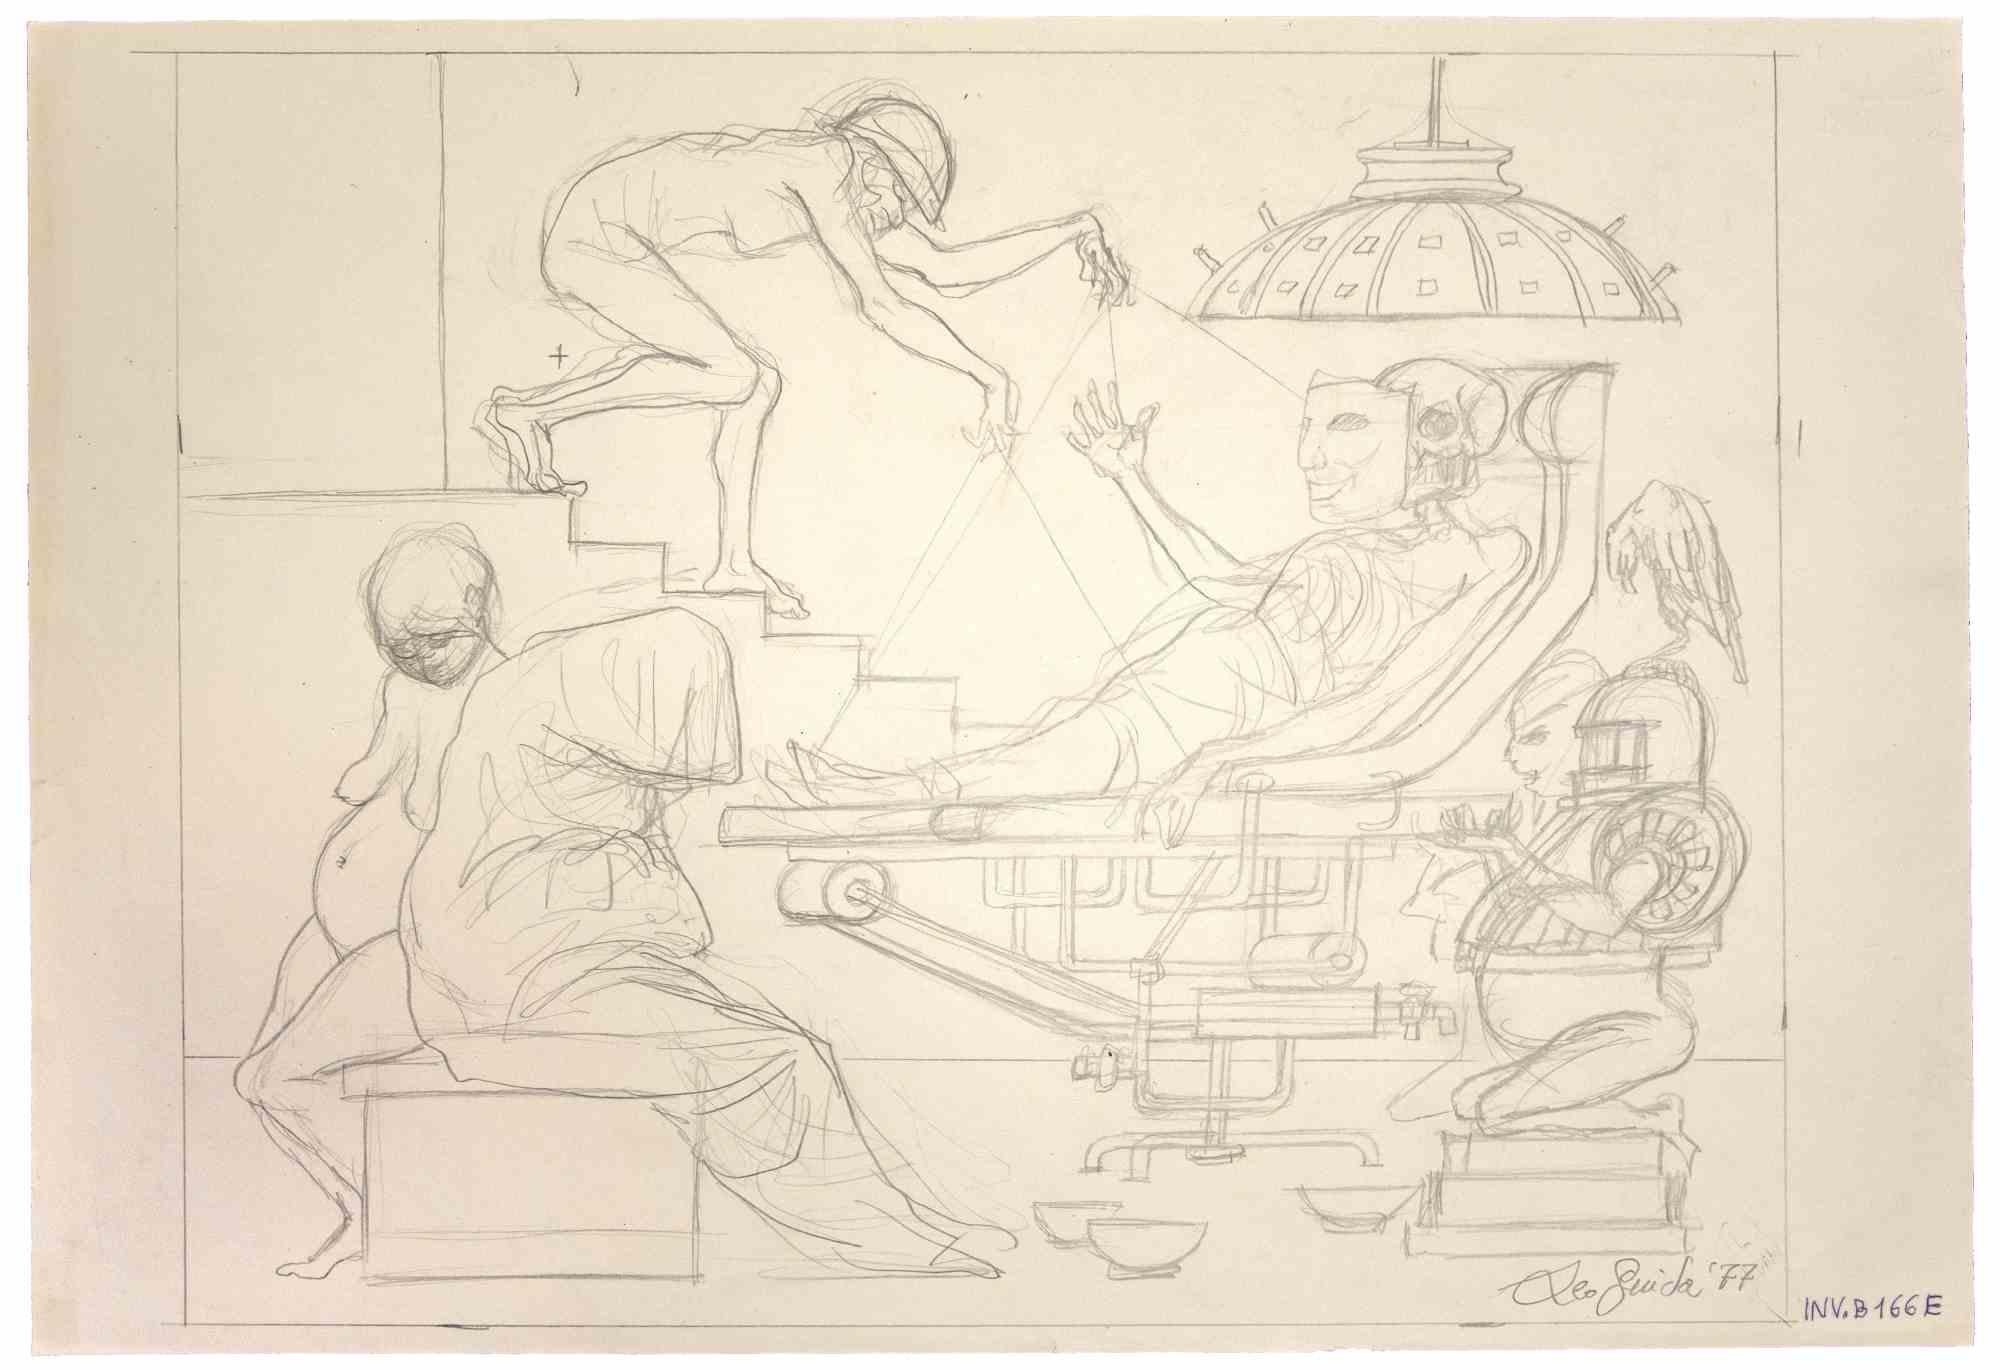 Agonie  ist ein originales zeitgenössisches Kunstwerk, das  im Jahr 1977  des italienischen zeitgenössischen Künstlers  Leo Guida  (1992 - 2017).

Originalzeichnung mit Bleistift auf elfenbeinfarbenem Papier.
 
Am unteren Rand handsigniert und